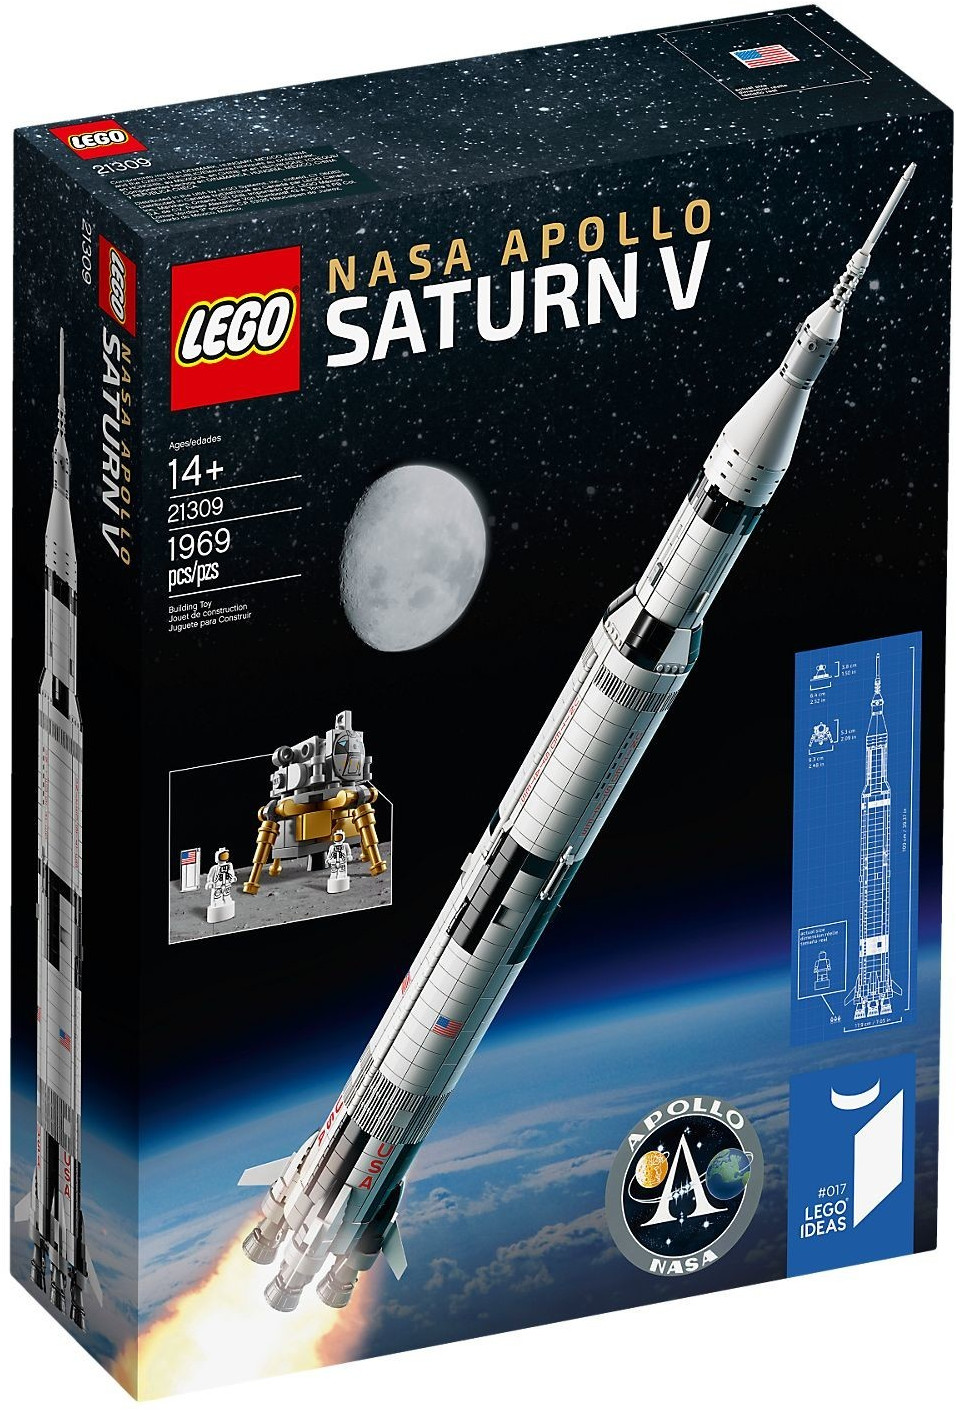 Slika za LEGO 21309 Nasa Apollo Saturn V